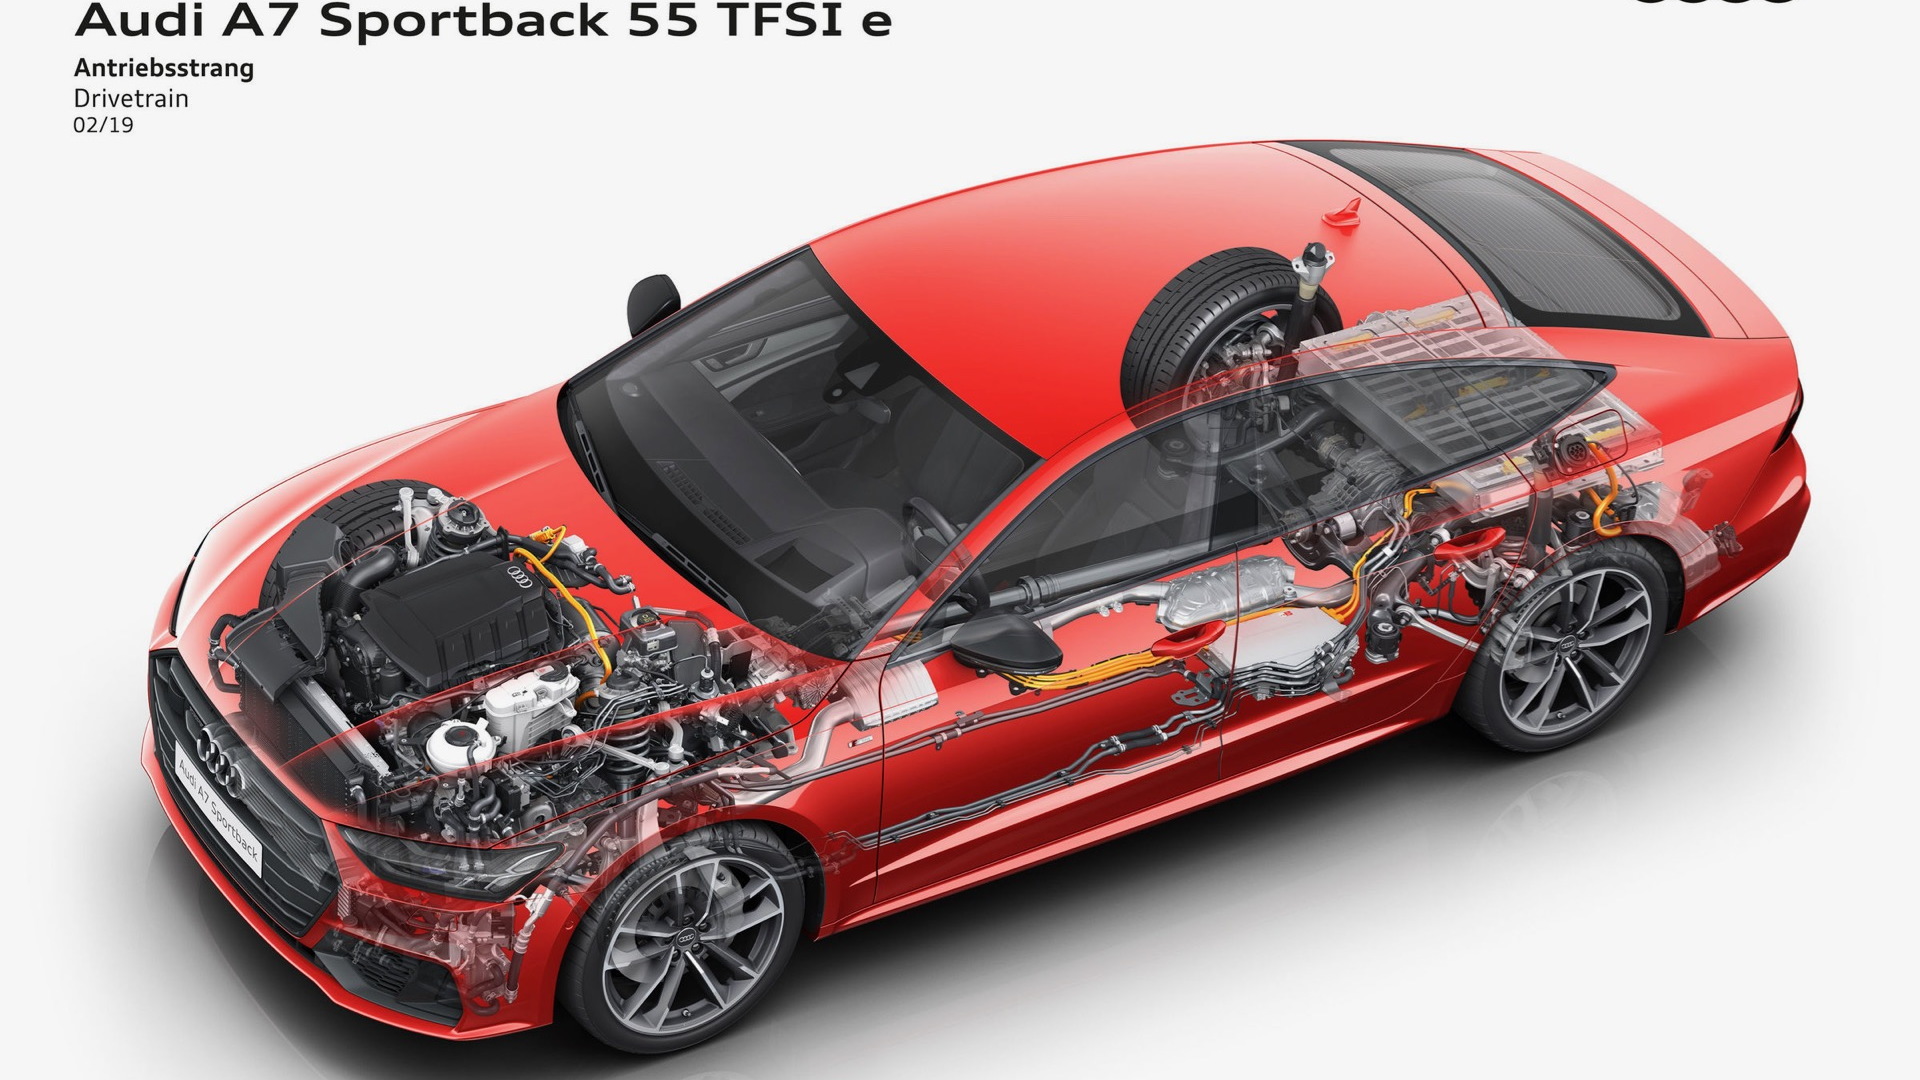 2021奥迪A7 Sportback 55 TFSI e插入式混合动力车